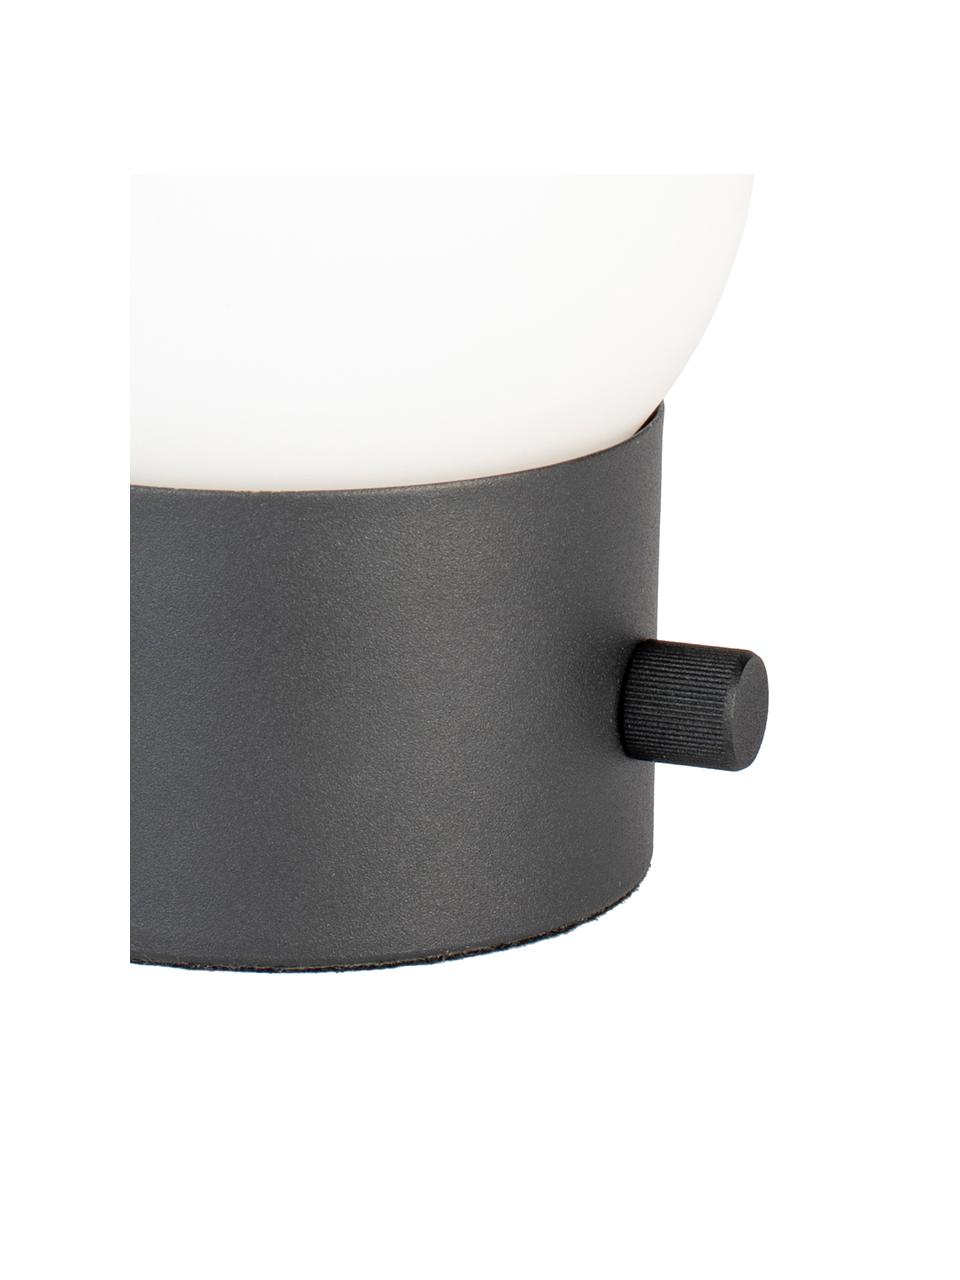 Klein dimbaar nachtlampje Urban met USB-aansluiting, Lampenkap: opaalglas, Lampvoet: gecoat metaal, Wit, zwart, Ø 13 x H 25 cm